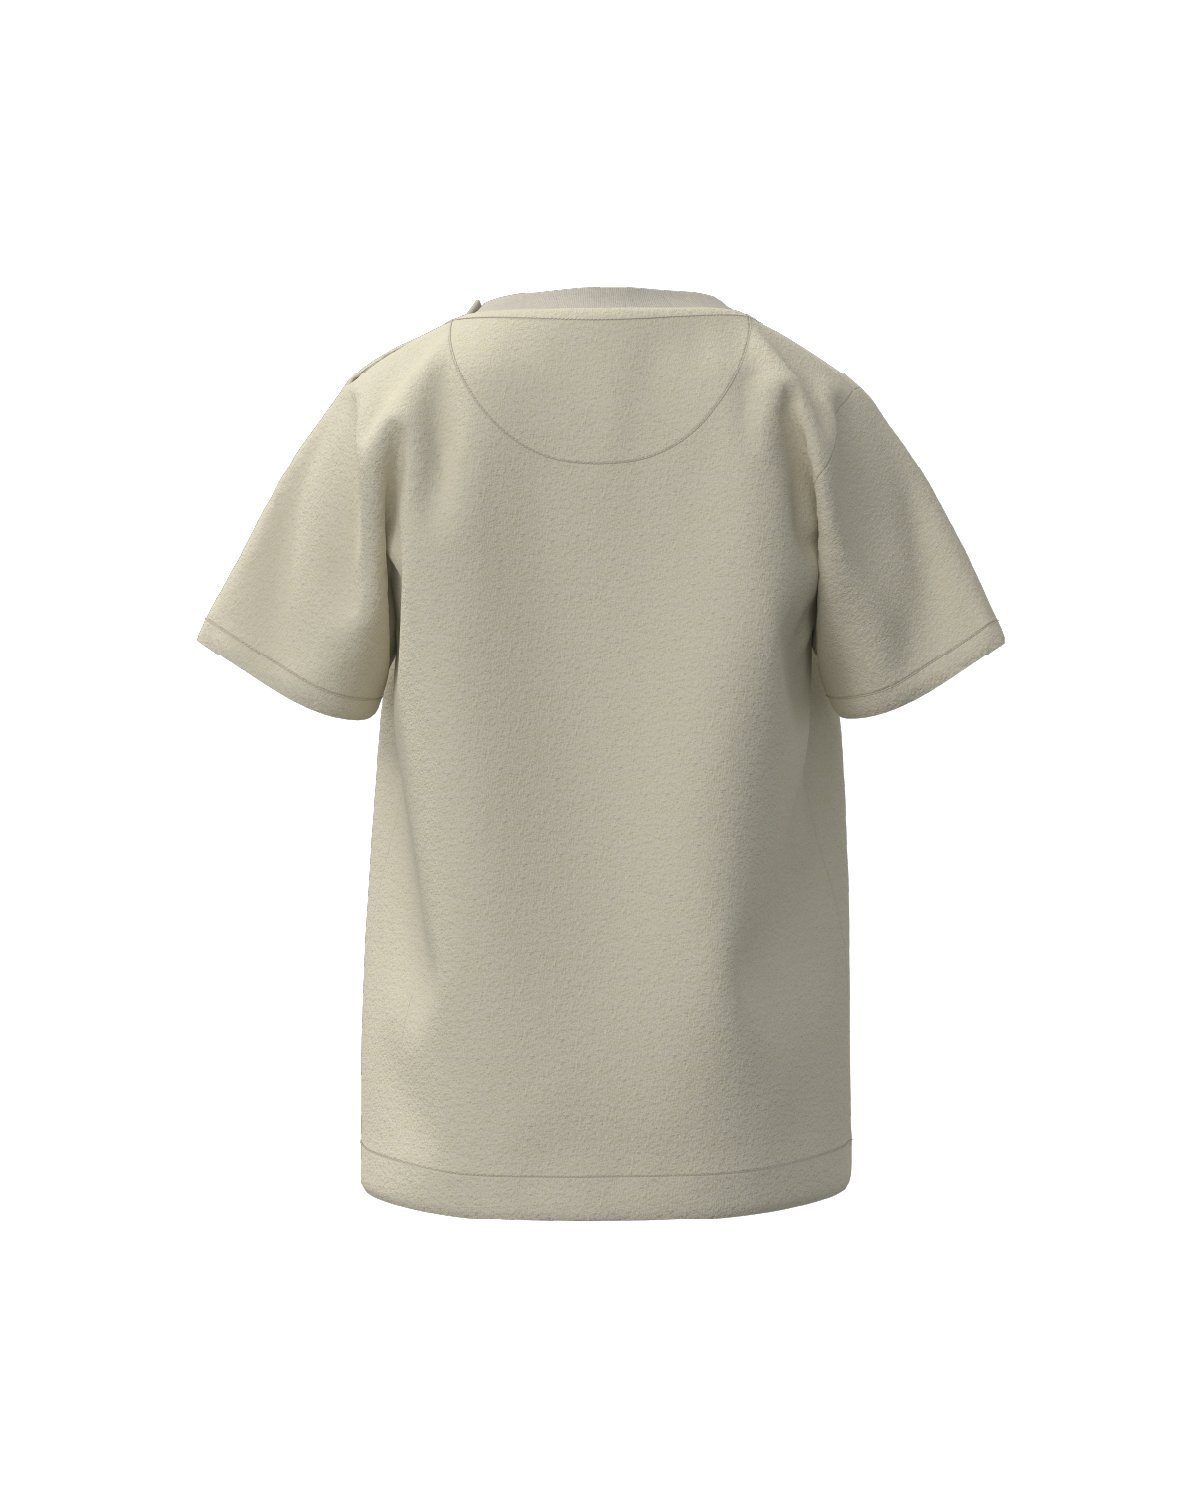 T-Shirt Siebenschläfer bedruckt, 100 Bio-Baumwolle, unisex Bobo % "Cuddle"